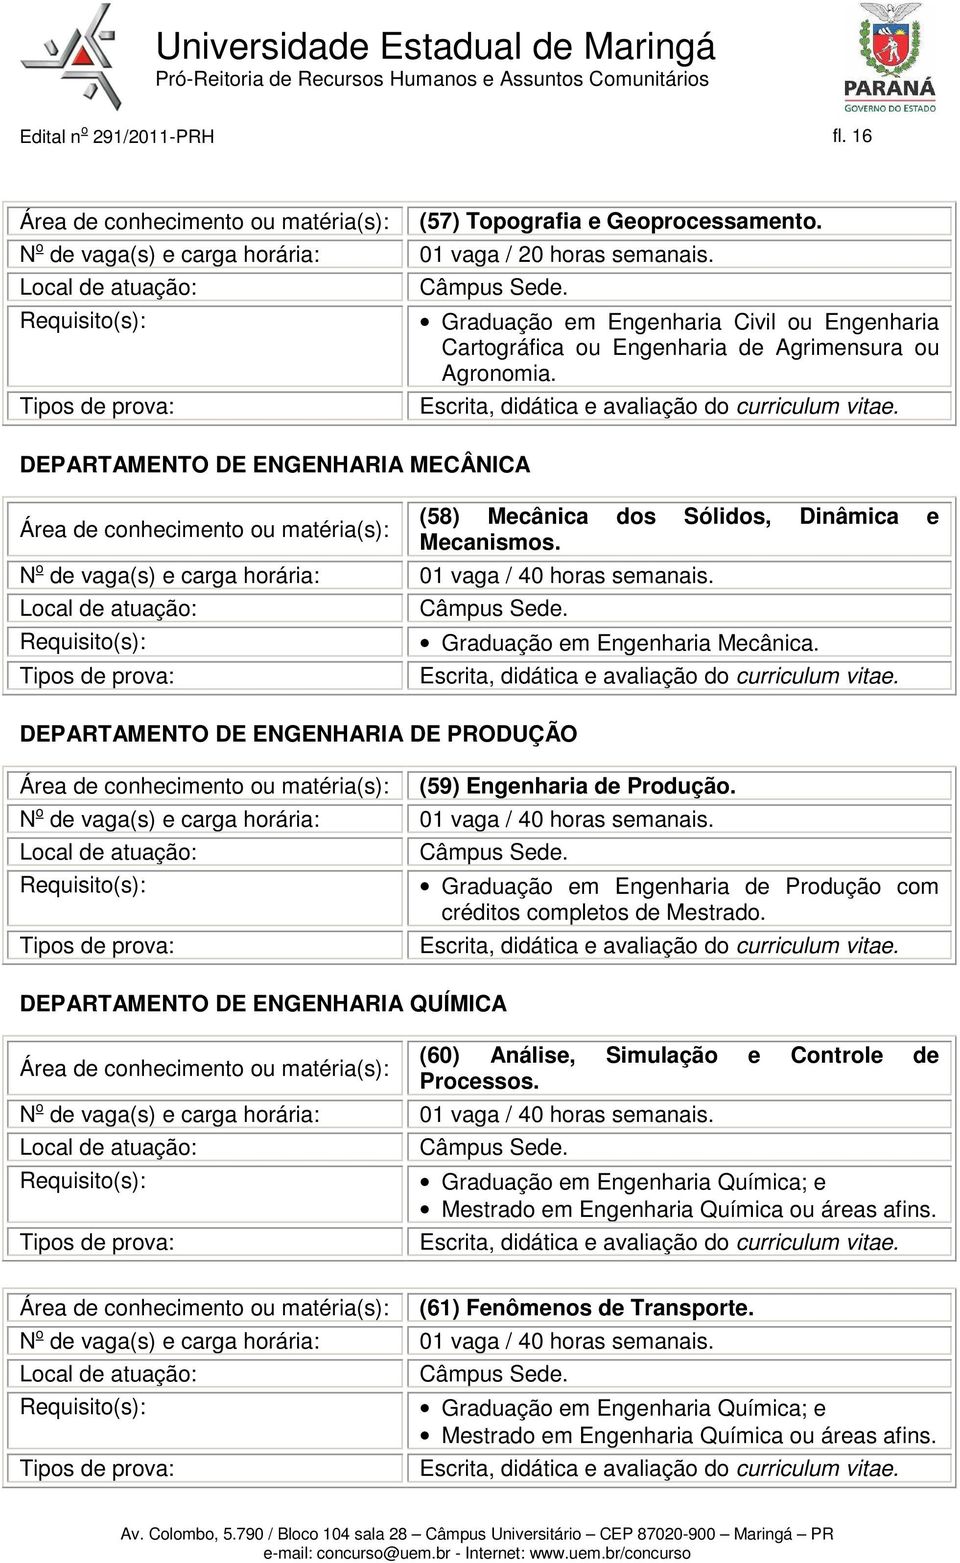 DEPARTAMENTO DE ENGENHARIA DE PRODUÇÃO (59) Engenharia de Produção. Graduação em Engenharia de Produção com créditos completos de Mestrado.